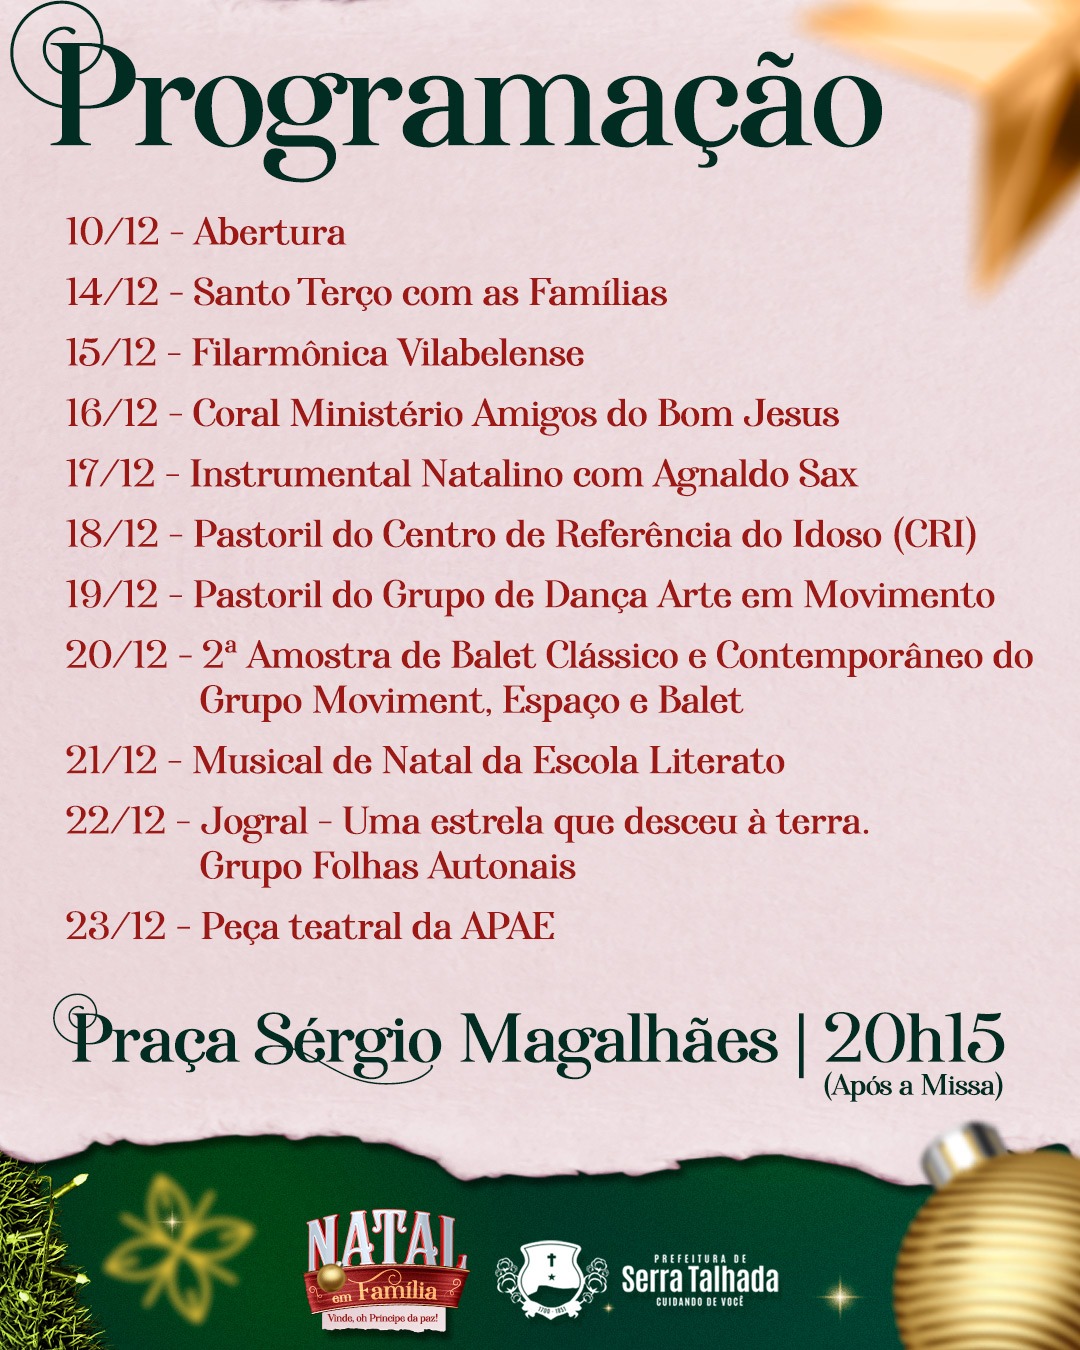 Decoração natalina será inaugurada neste domingo em ST